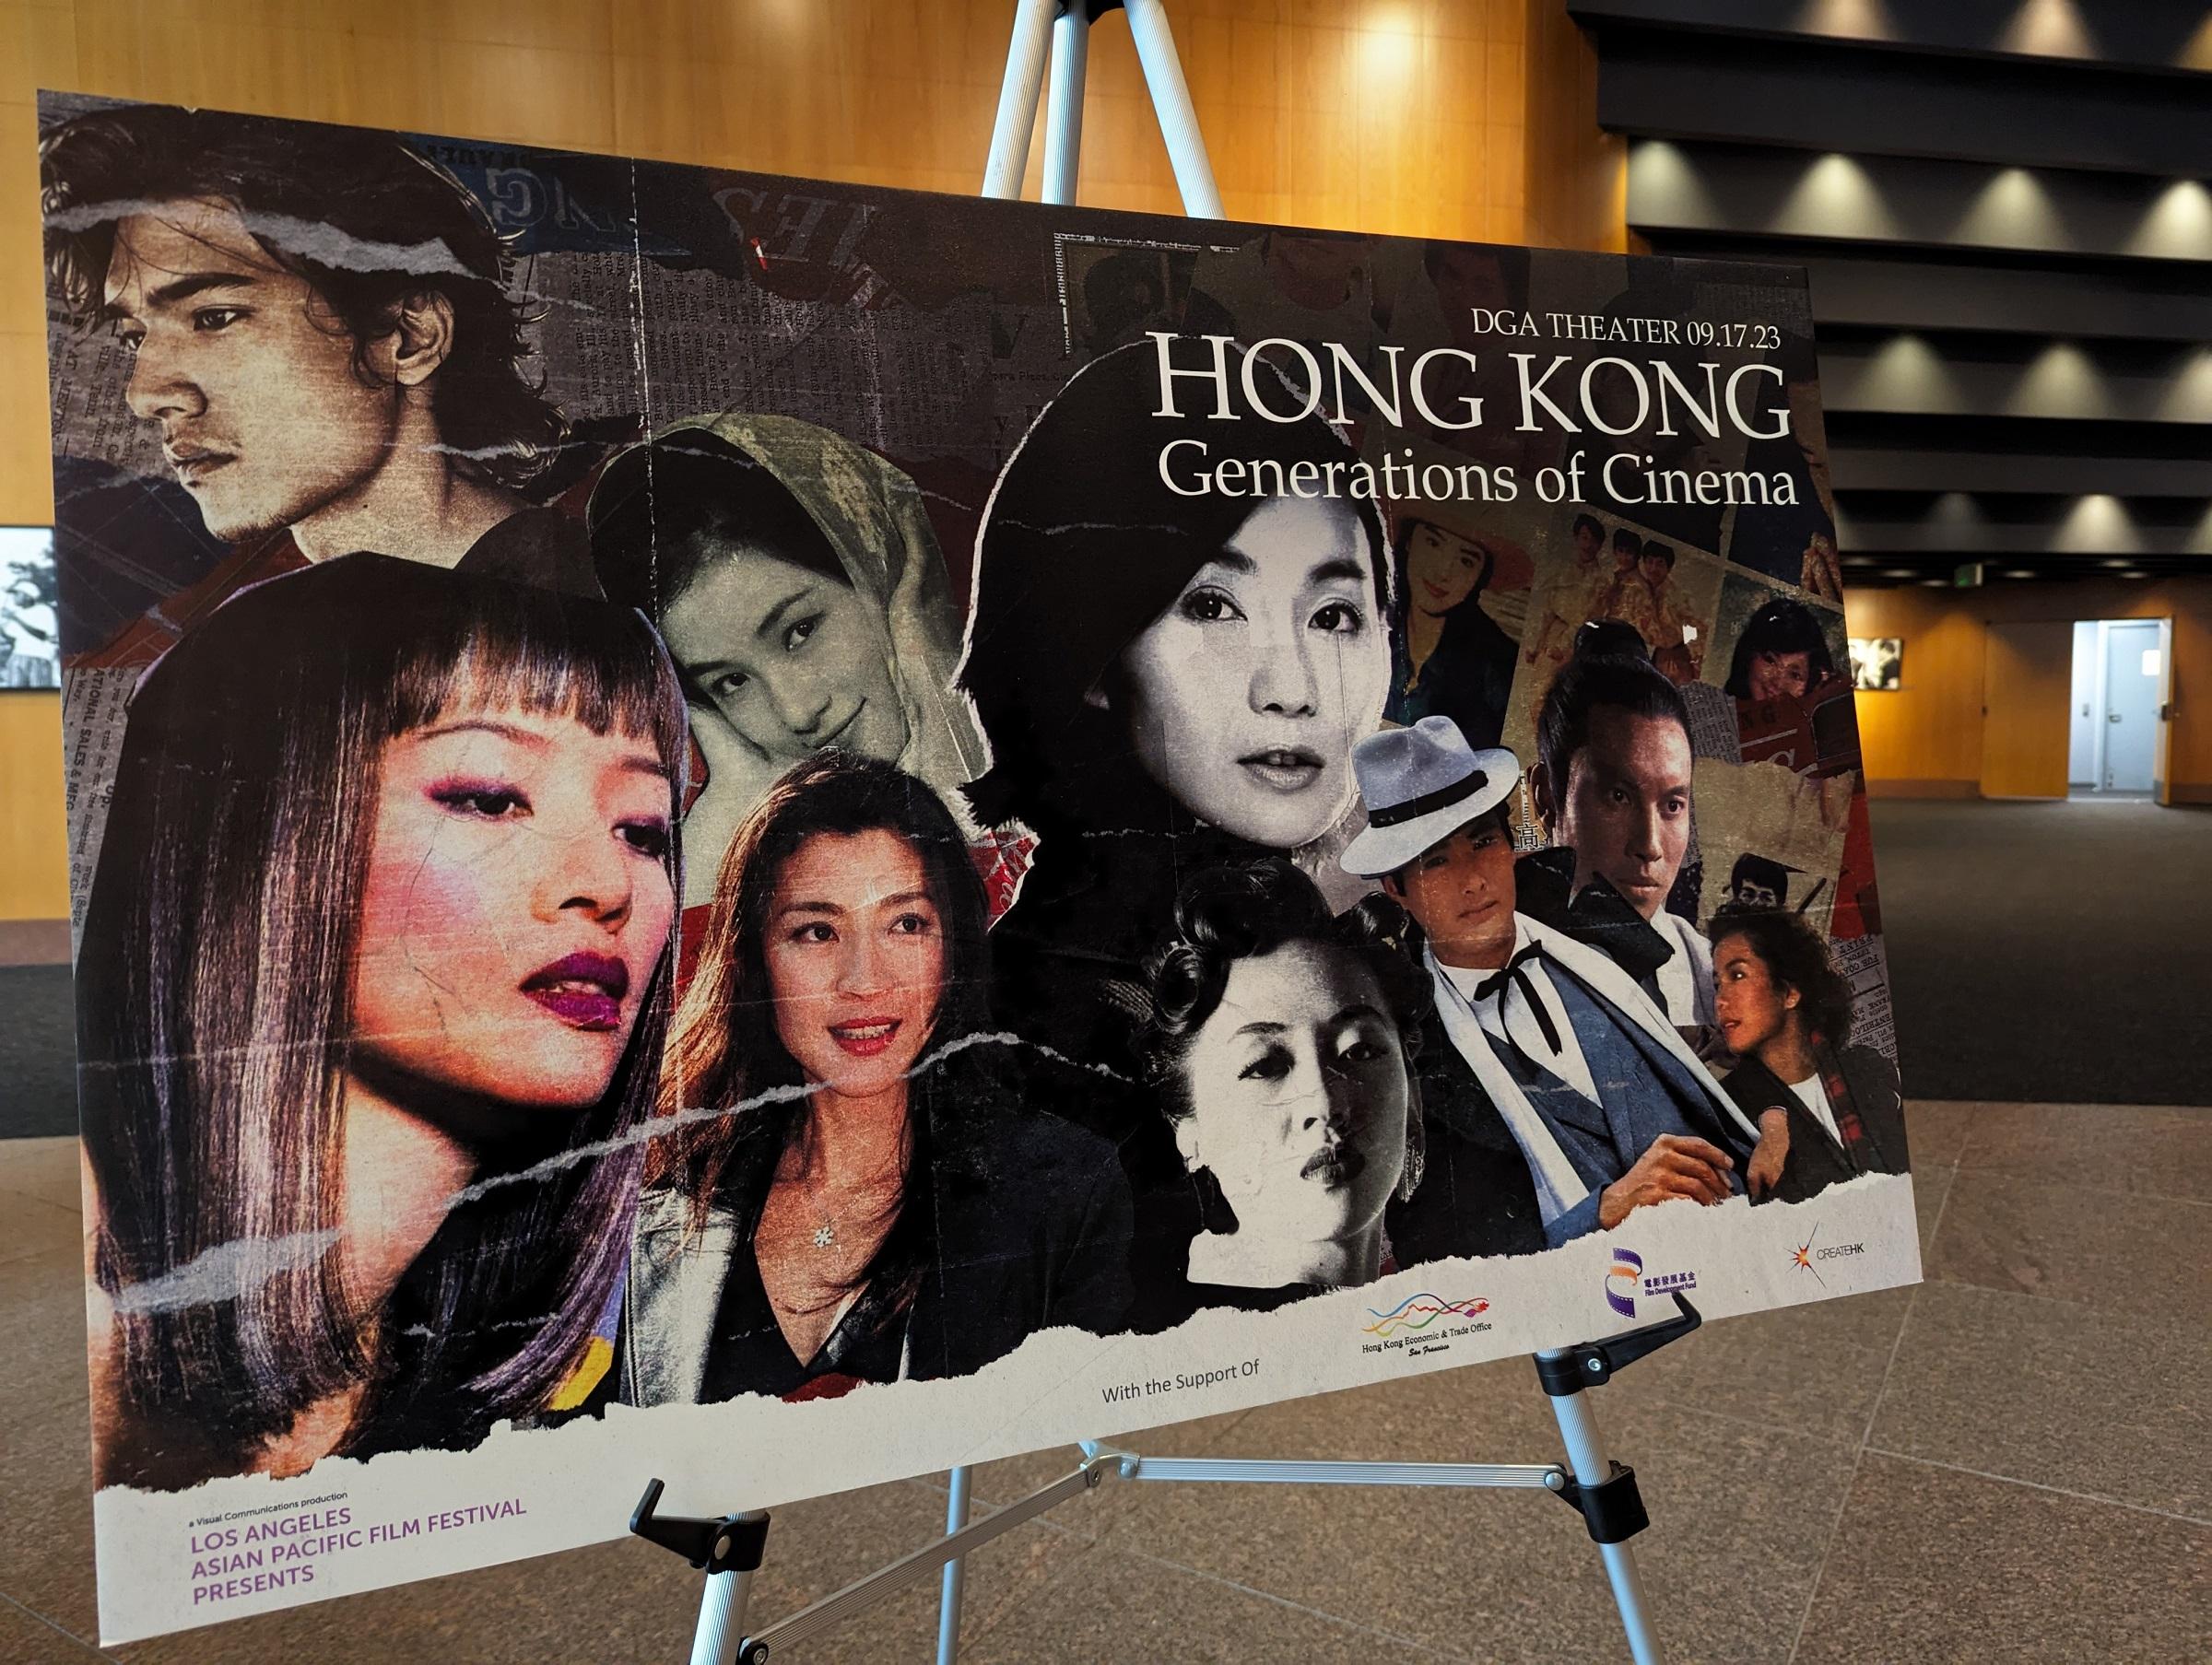 香港驻三藩市经济贸易办事处于九月十七日（洛杉矶时间）连续两年赞助「洛杉矶亚太电影节呈献：香港电影年代」。该一天限定影展在洛杉矶美国导演协会剧院圆满结束。
